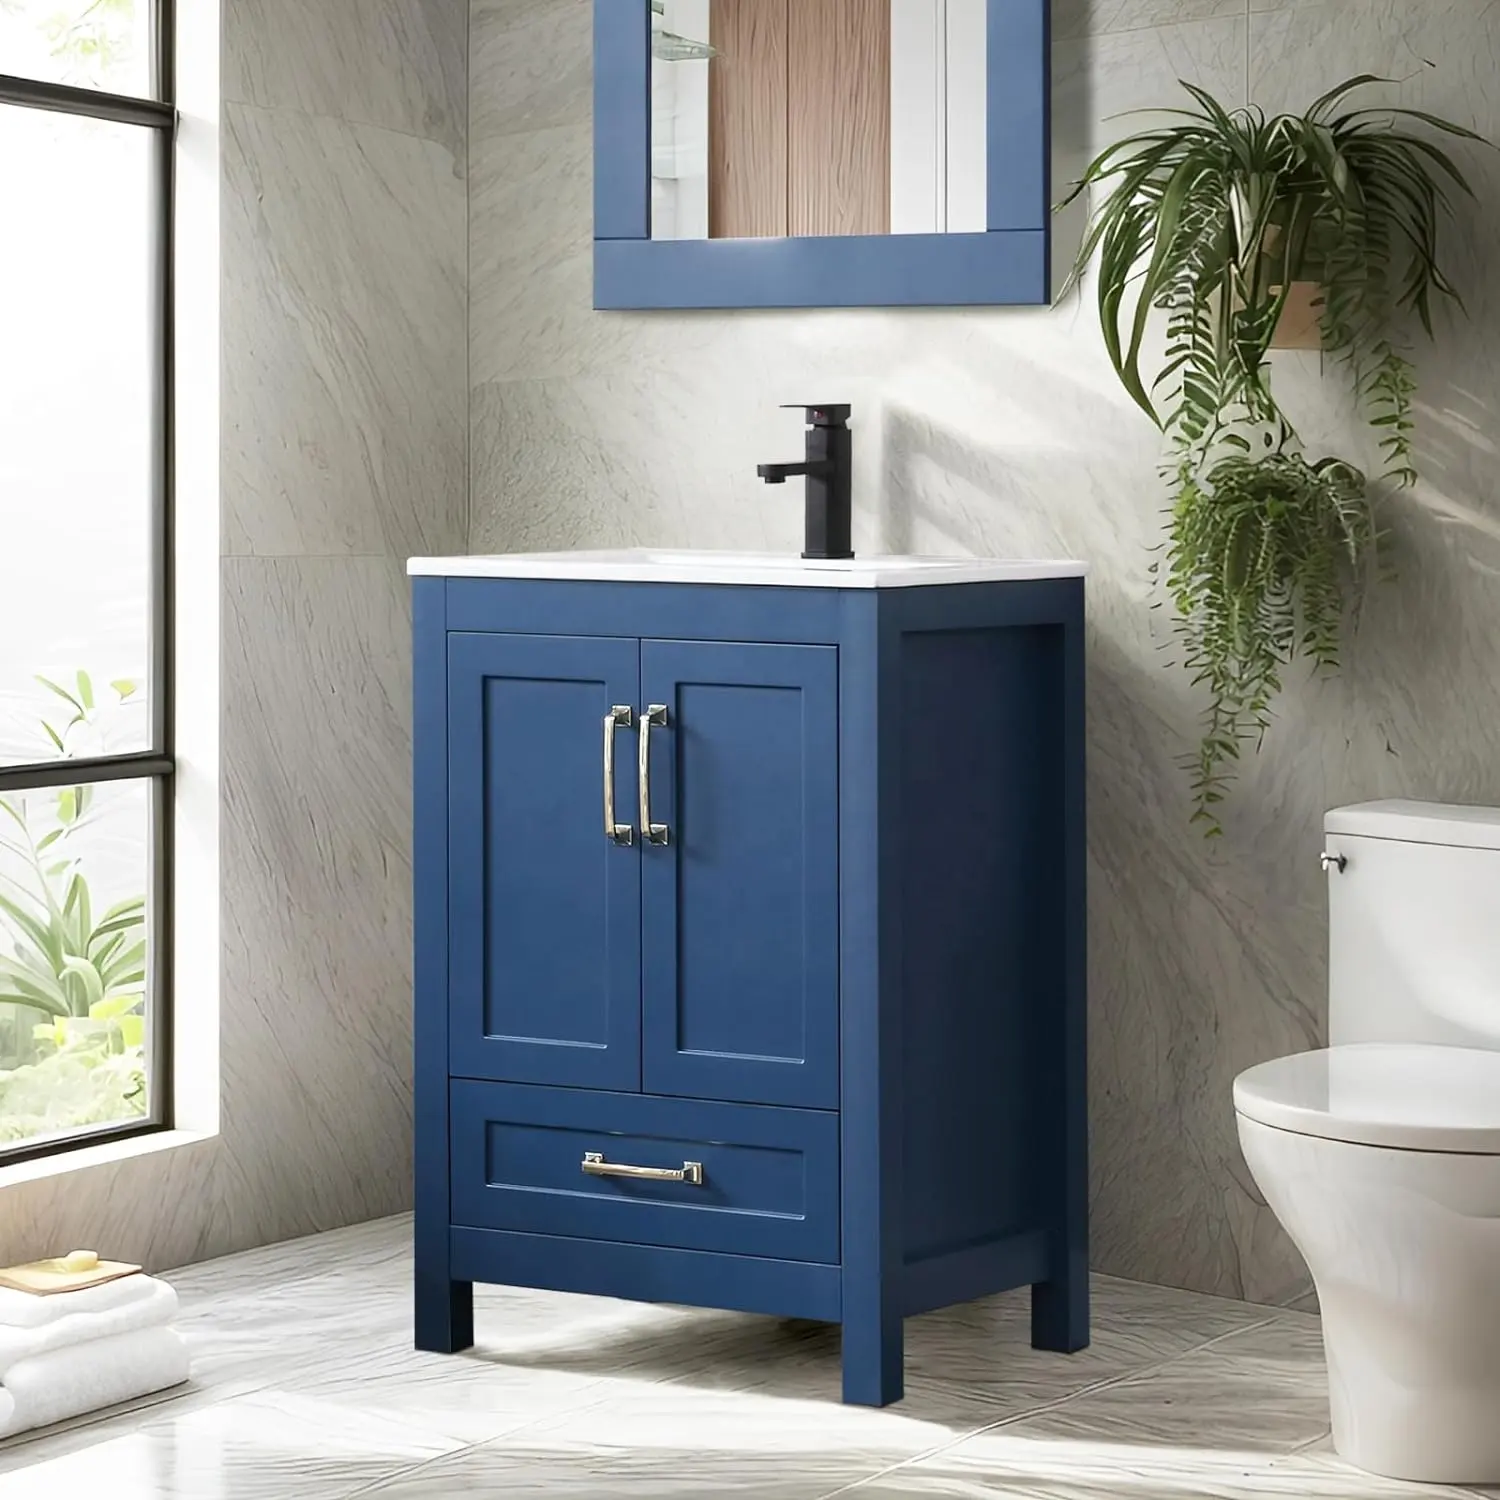 24 "синий окрашенный отдельно стоящий туалетный столик для ванной комнаты современные шкафы для ванной комнаты 24 дюйма туалетный столик с раковиной